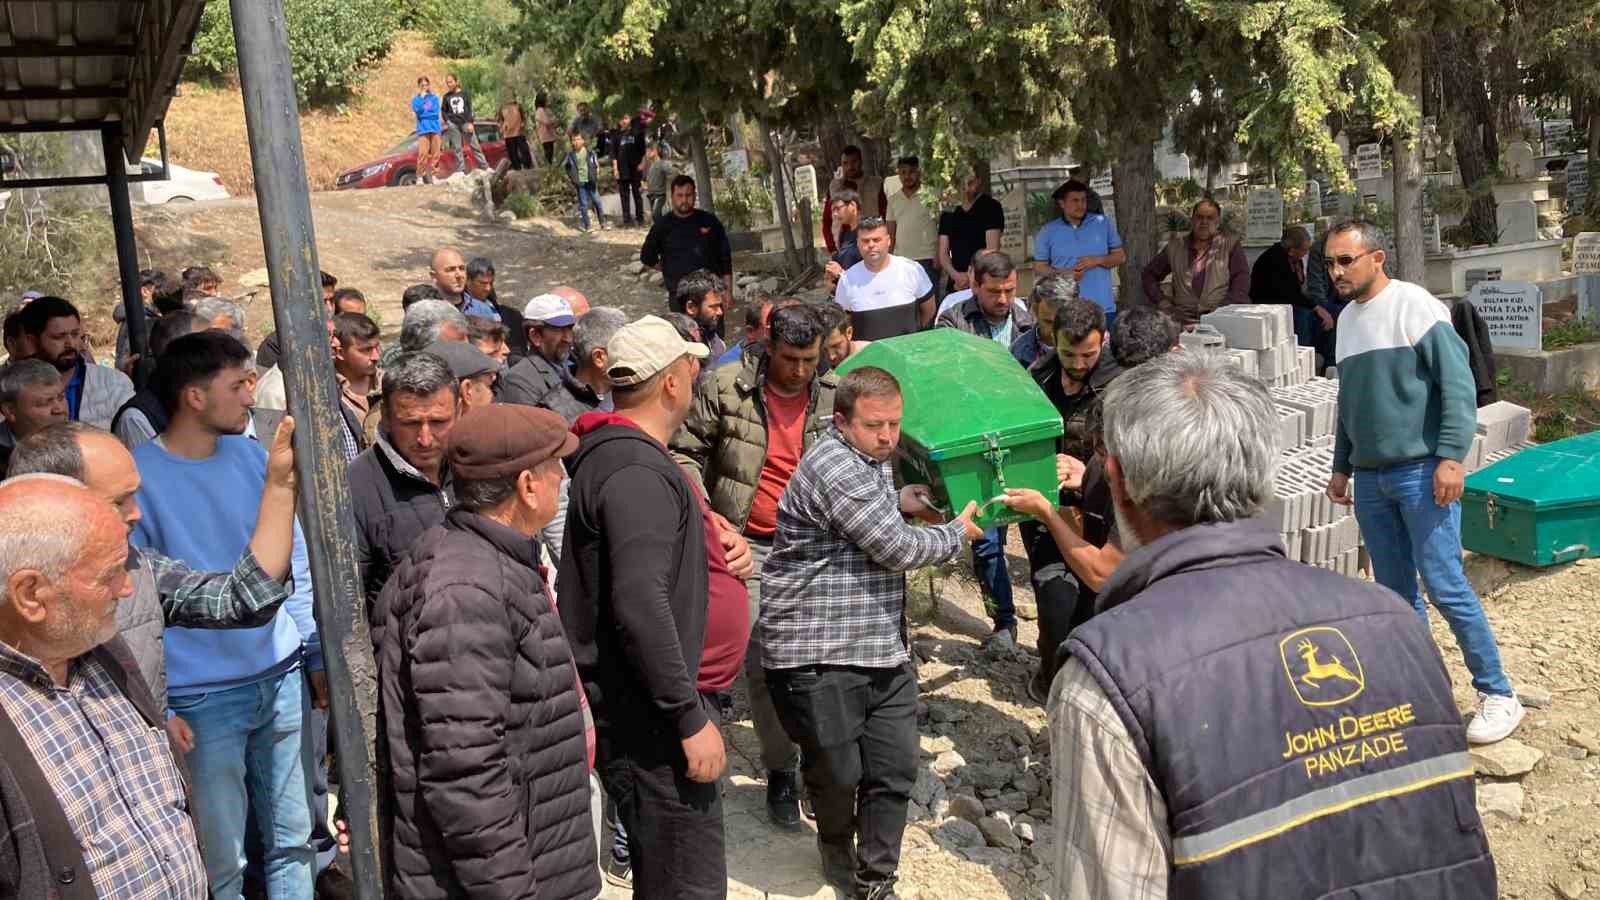 Mersin’de cinayete kurban giden 3 kişilik ailenin cenazeleri defin edildi
